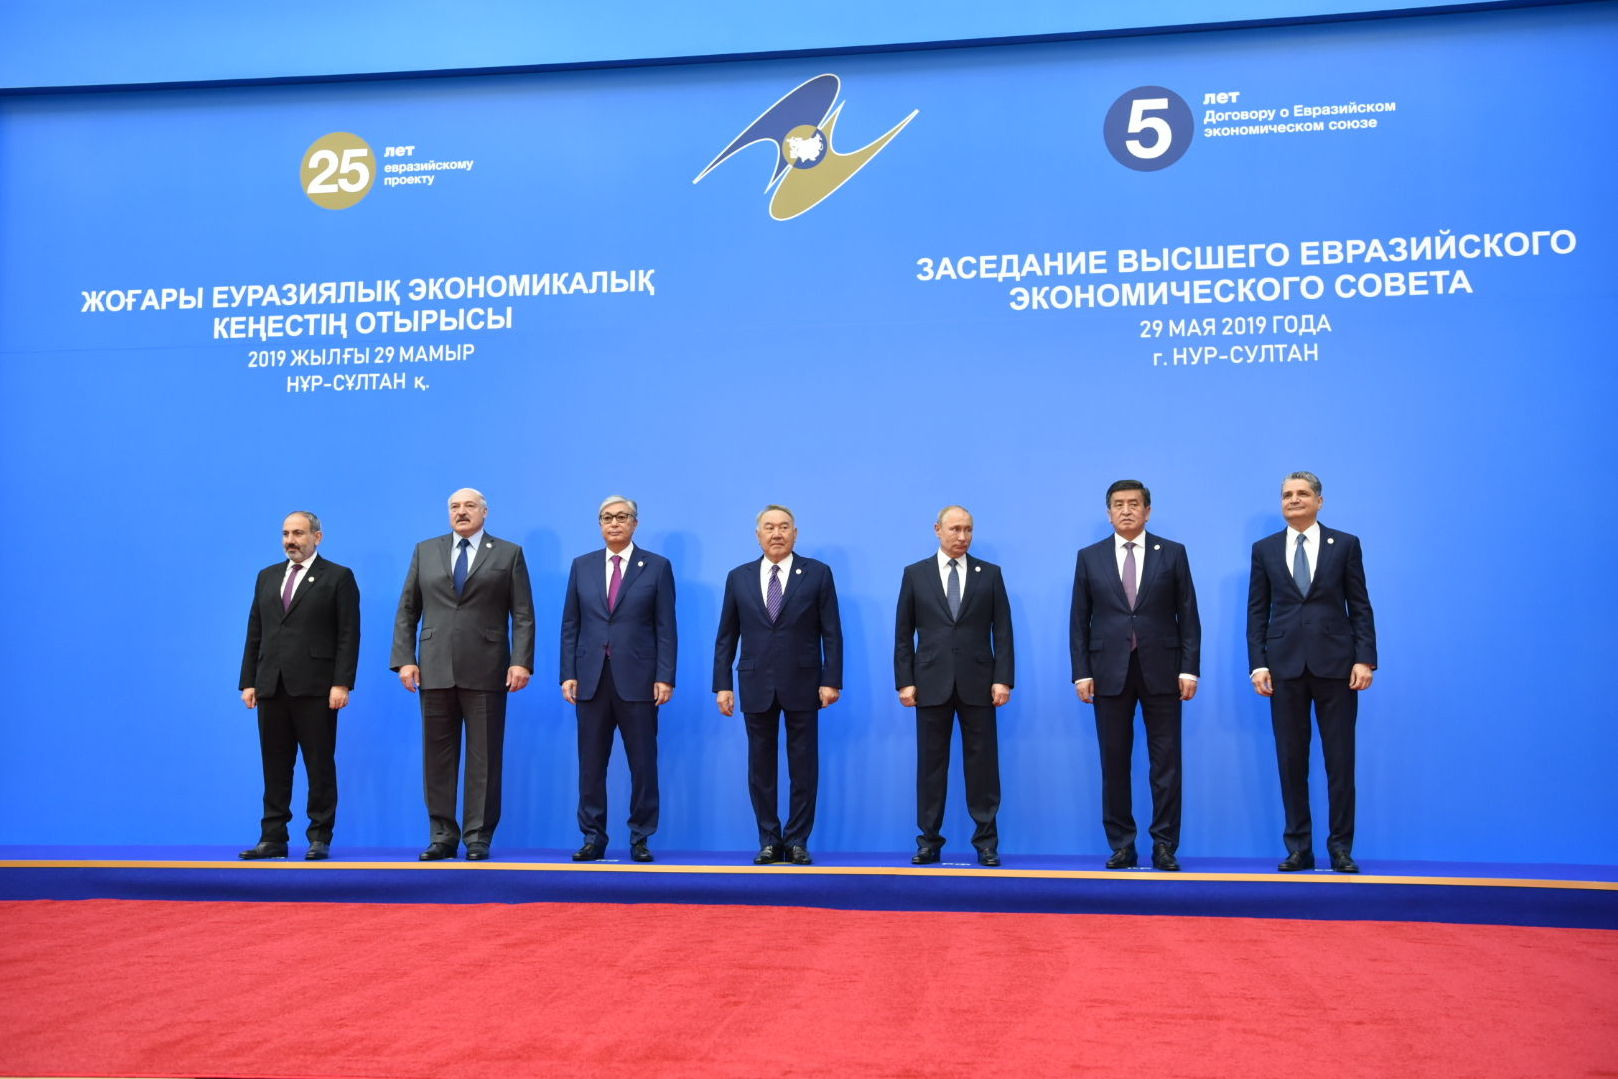 Главы ЕАЭС и Первый президент Казахстана - Елбасы Нурсултан Назарбаев фотографируются перед заседанием ВЕЭС